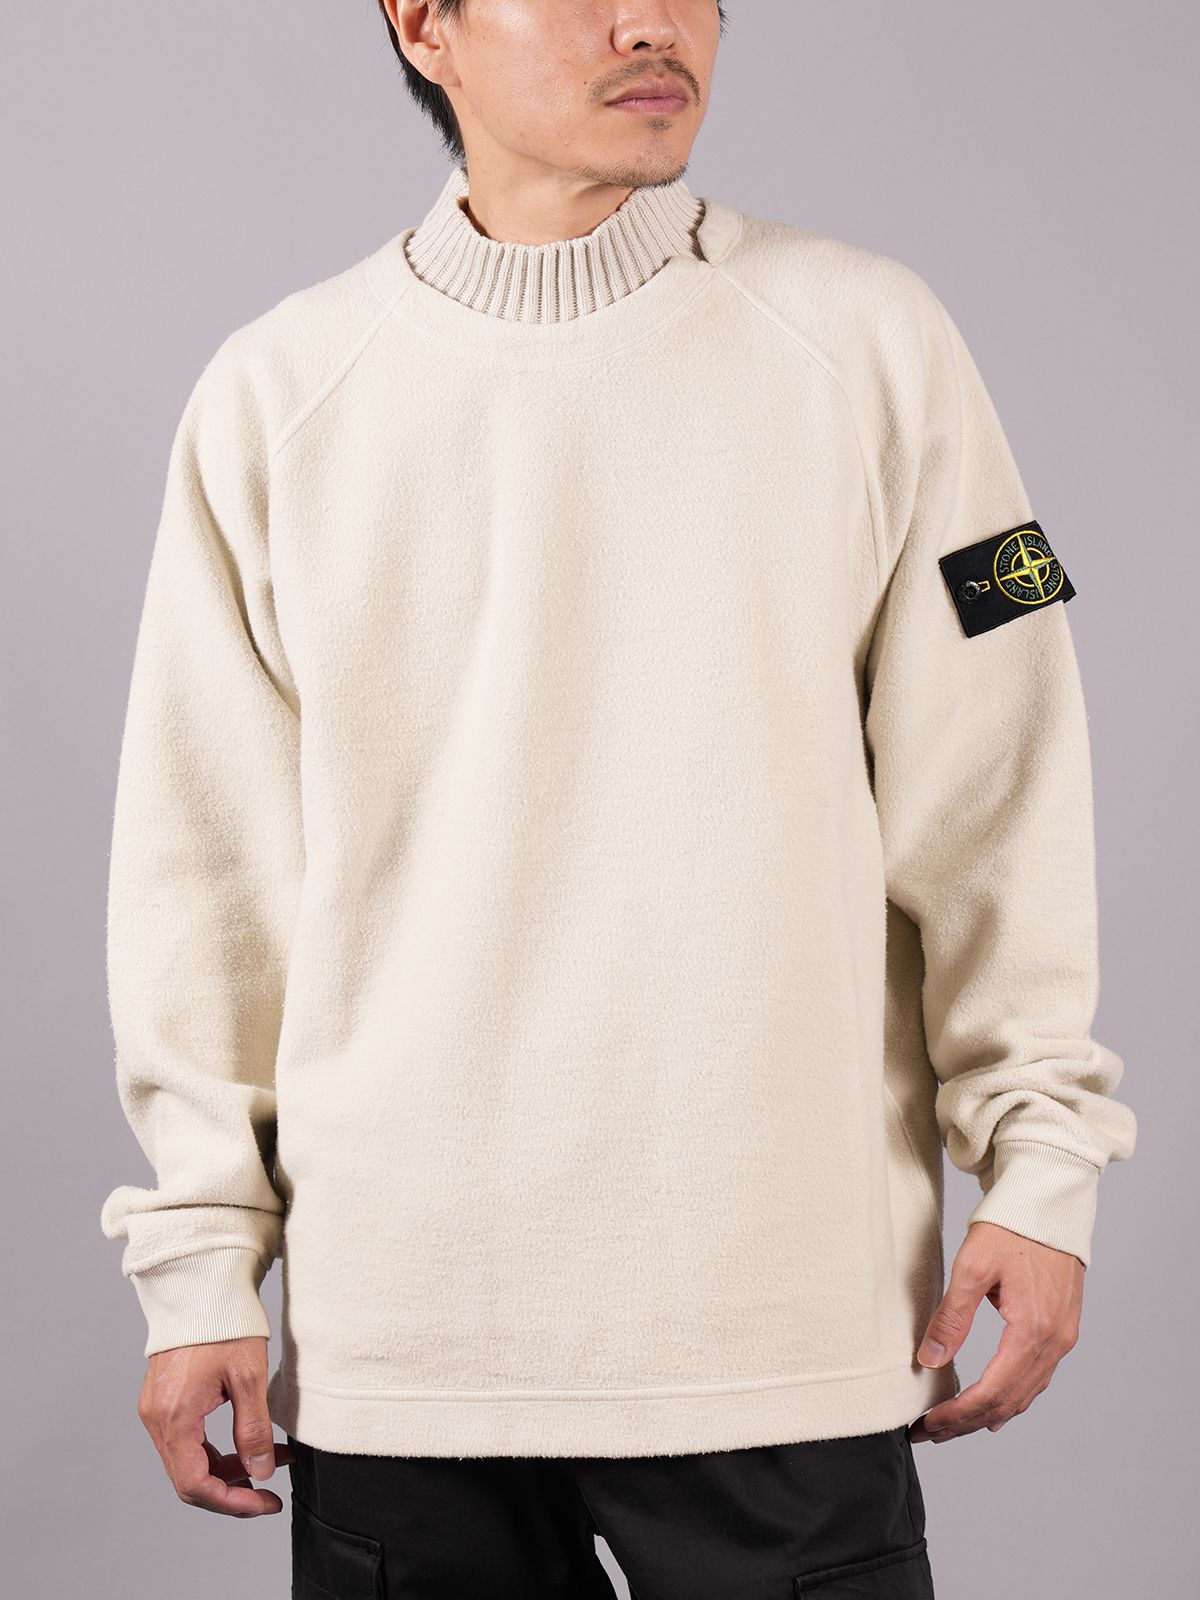 stone island sweater 22ss クルーネックニット - ニット/セーター